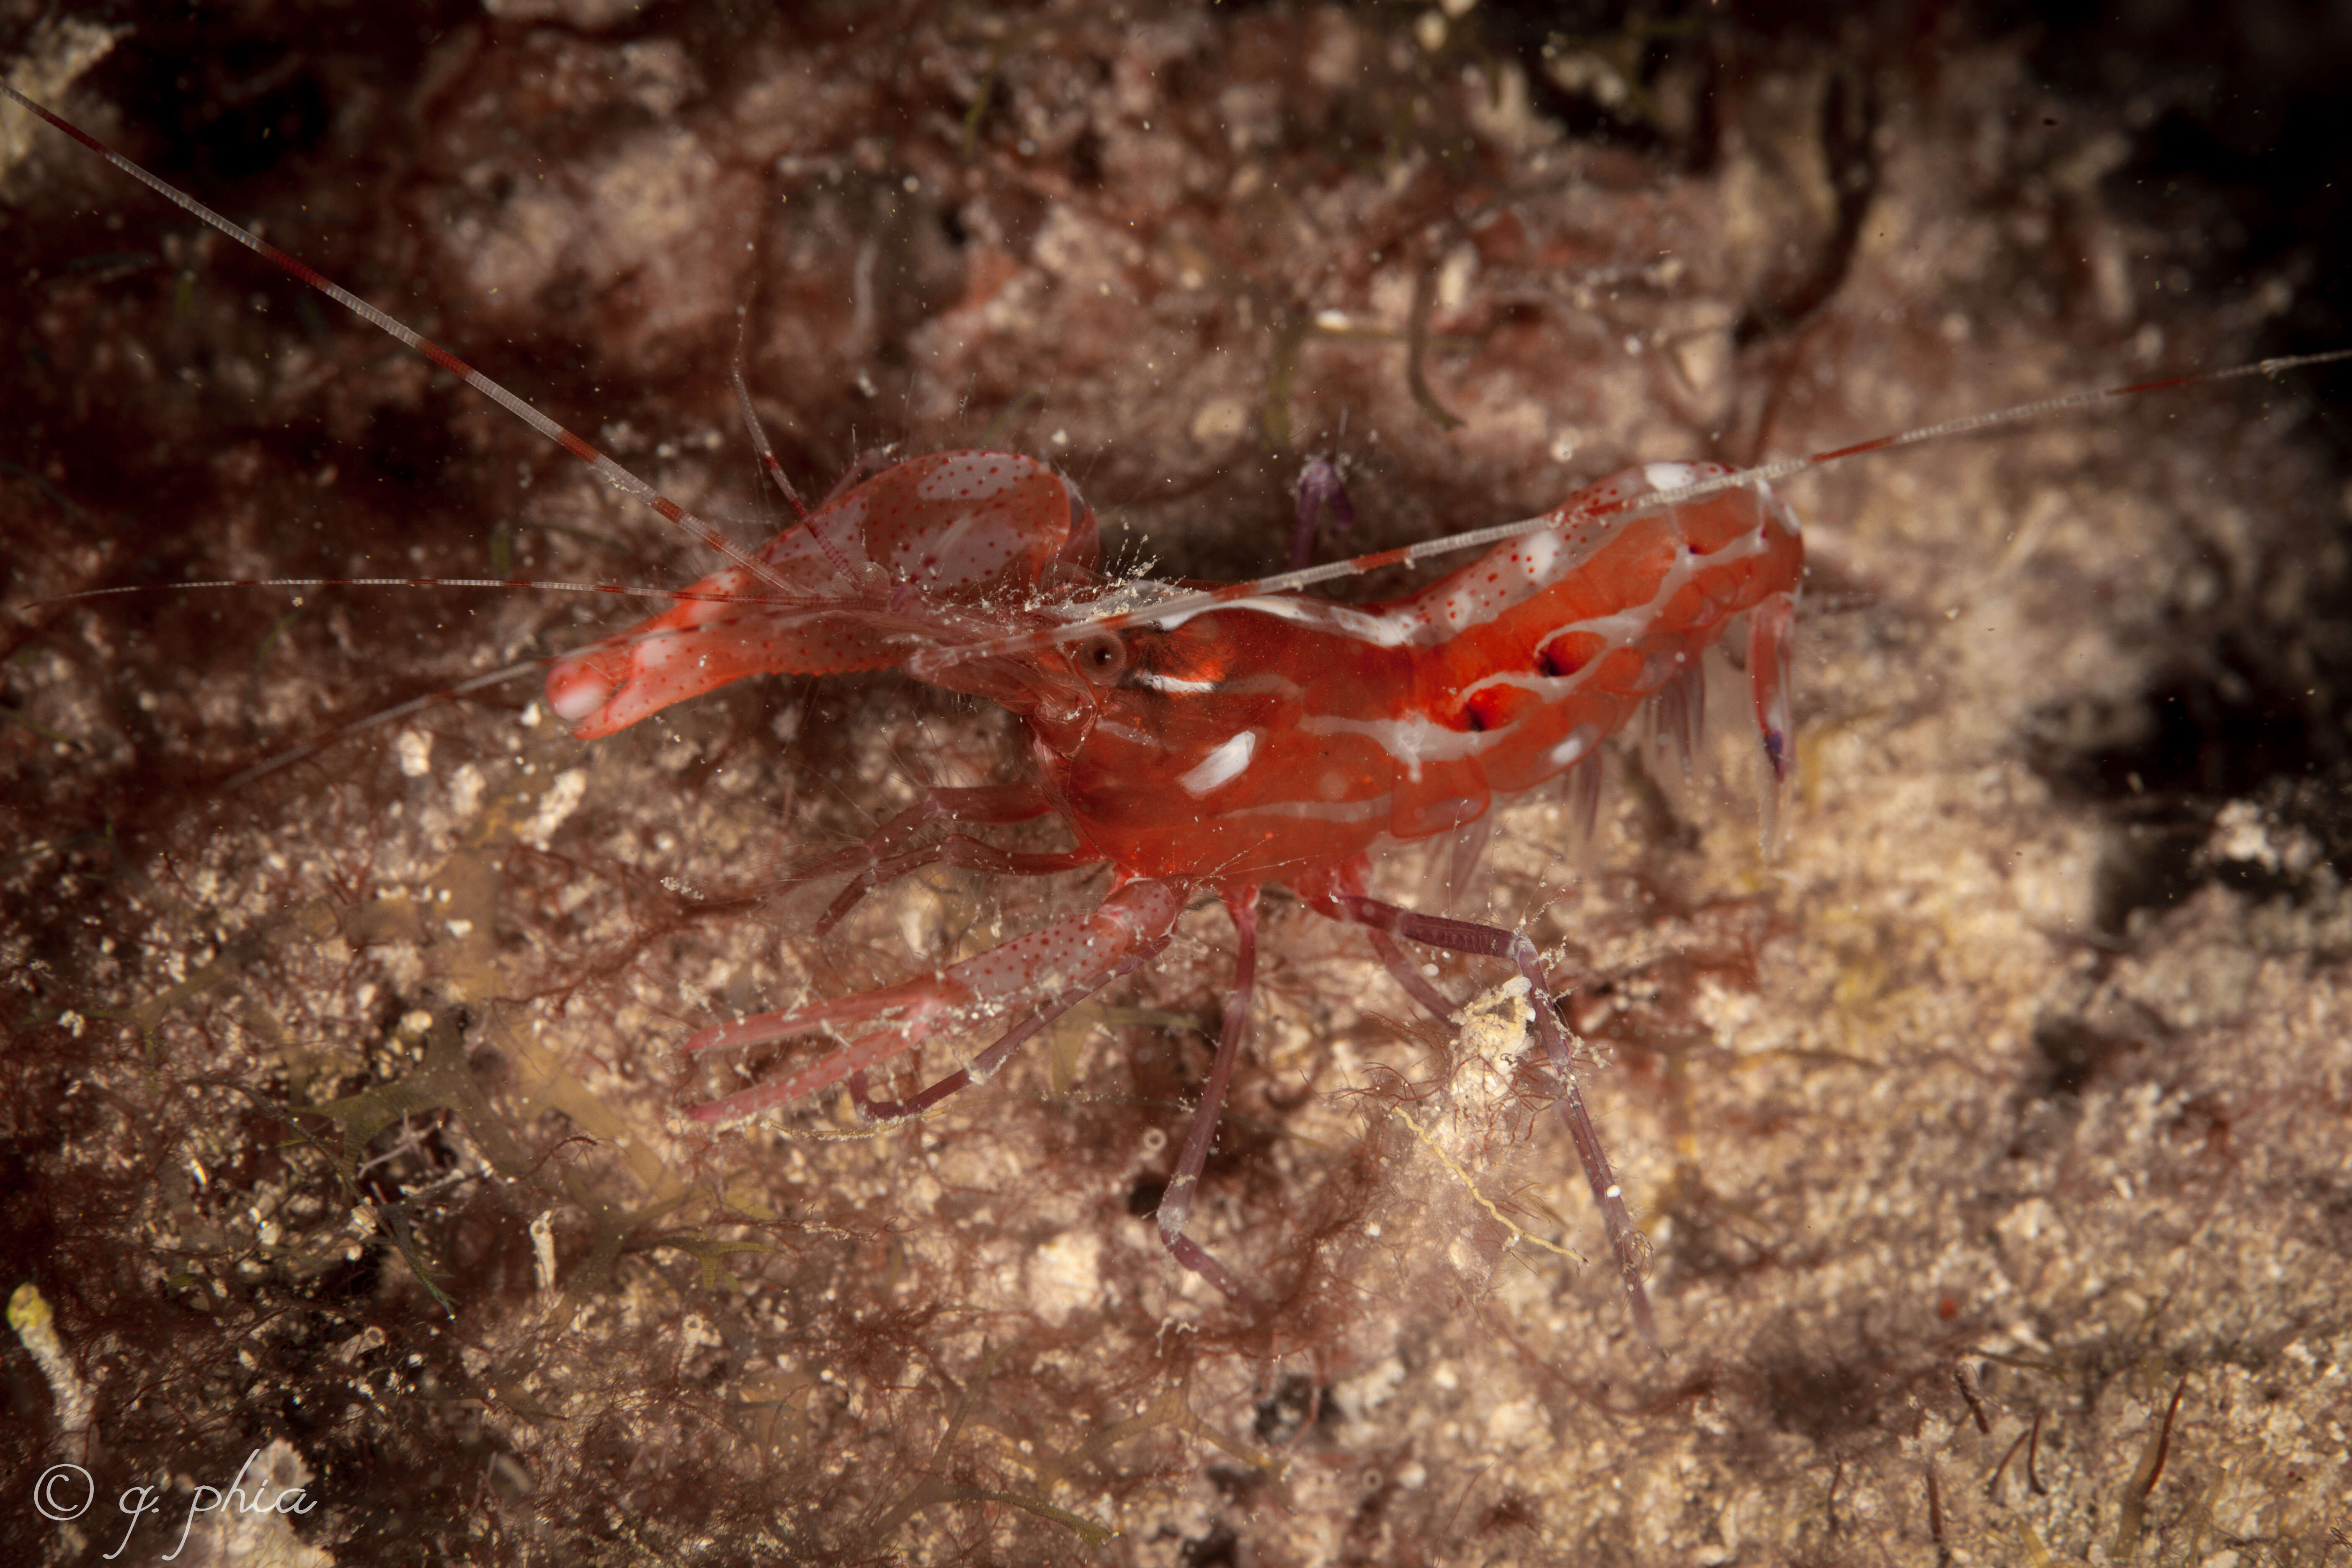 Image of brown pistol shrimp